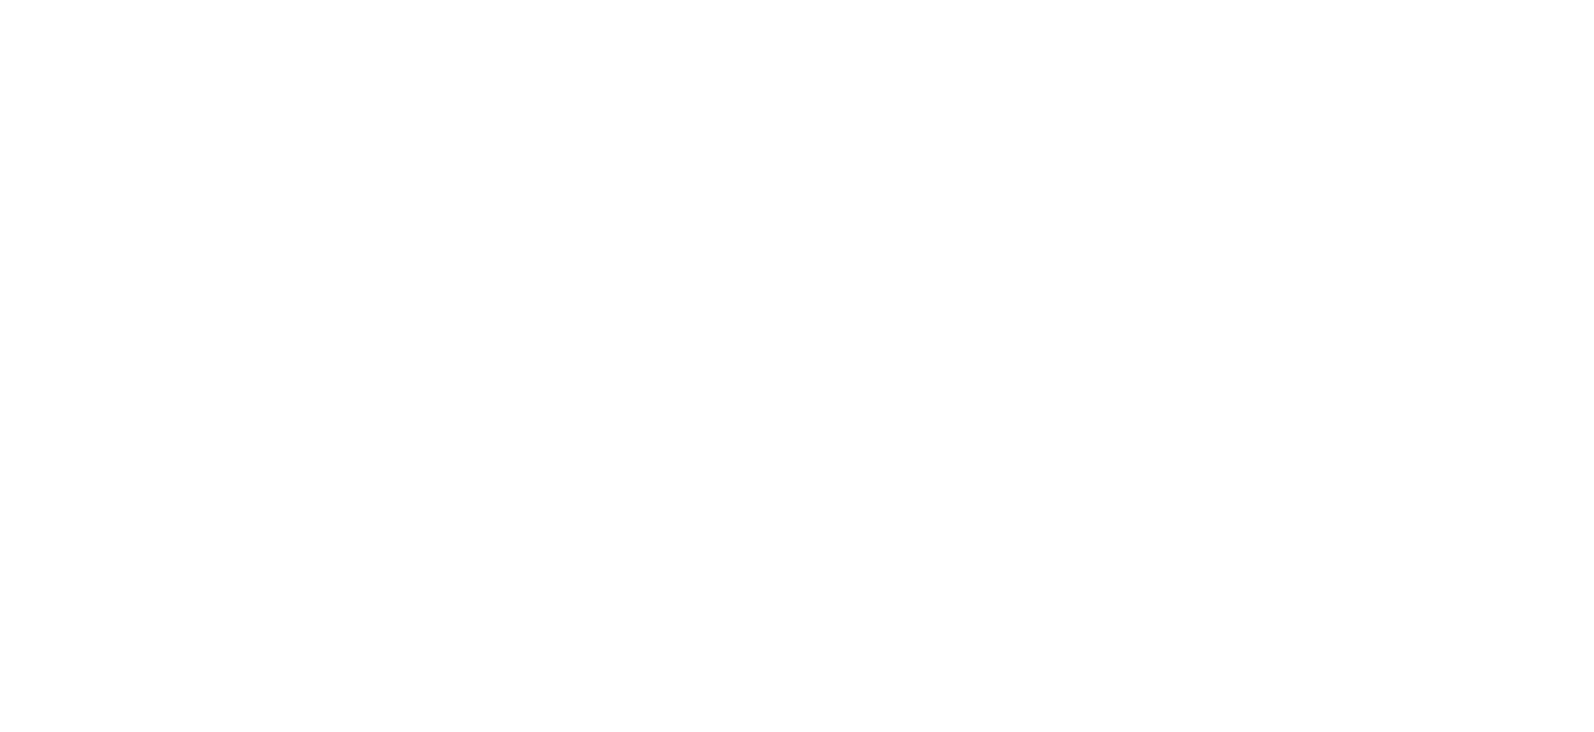 SES S.A. logo grand pour les fonds sombres (PNG transparent)